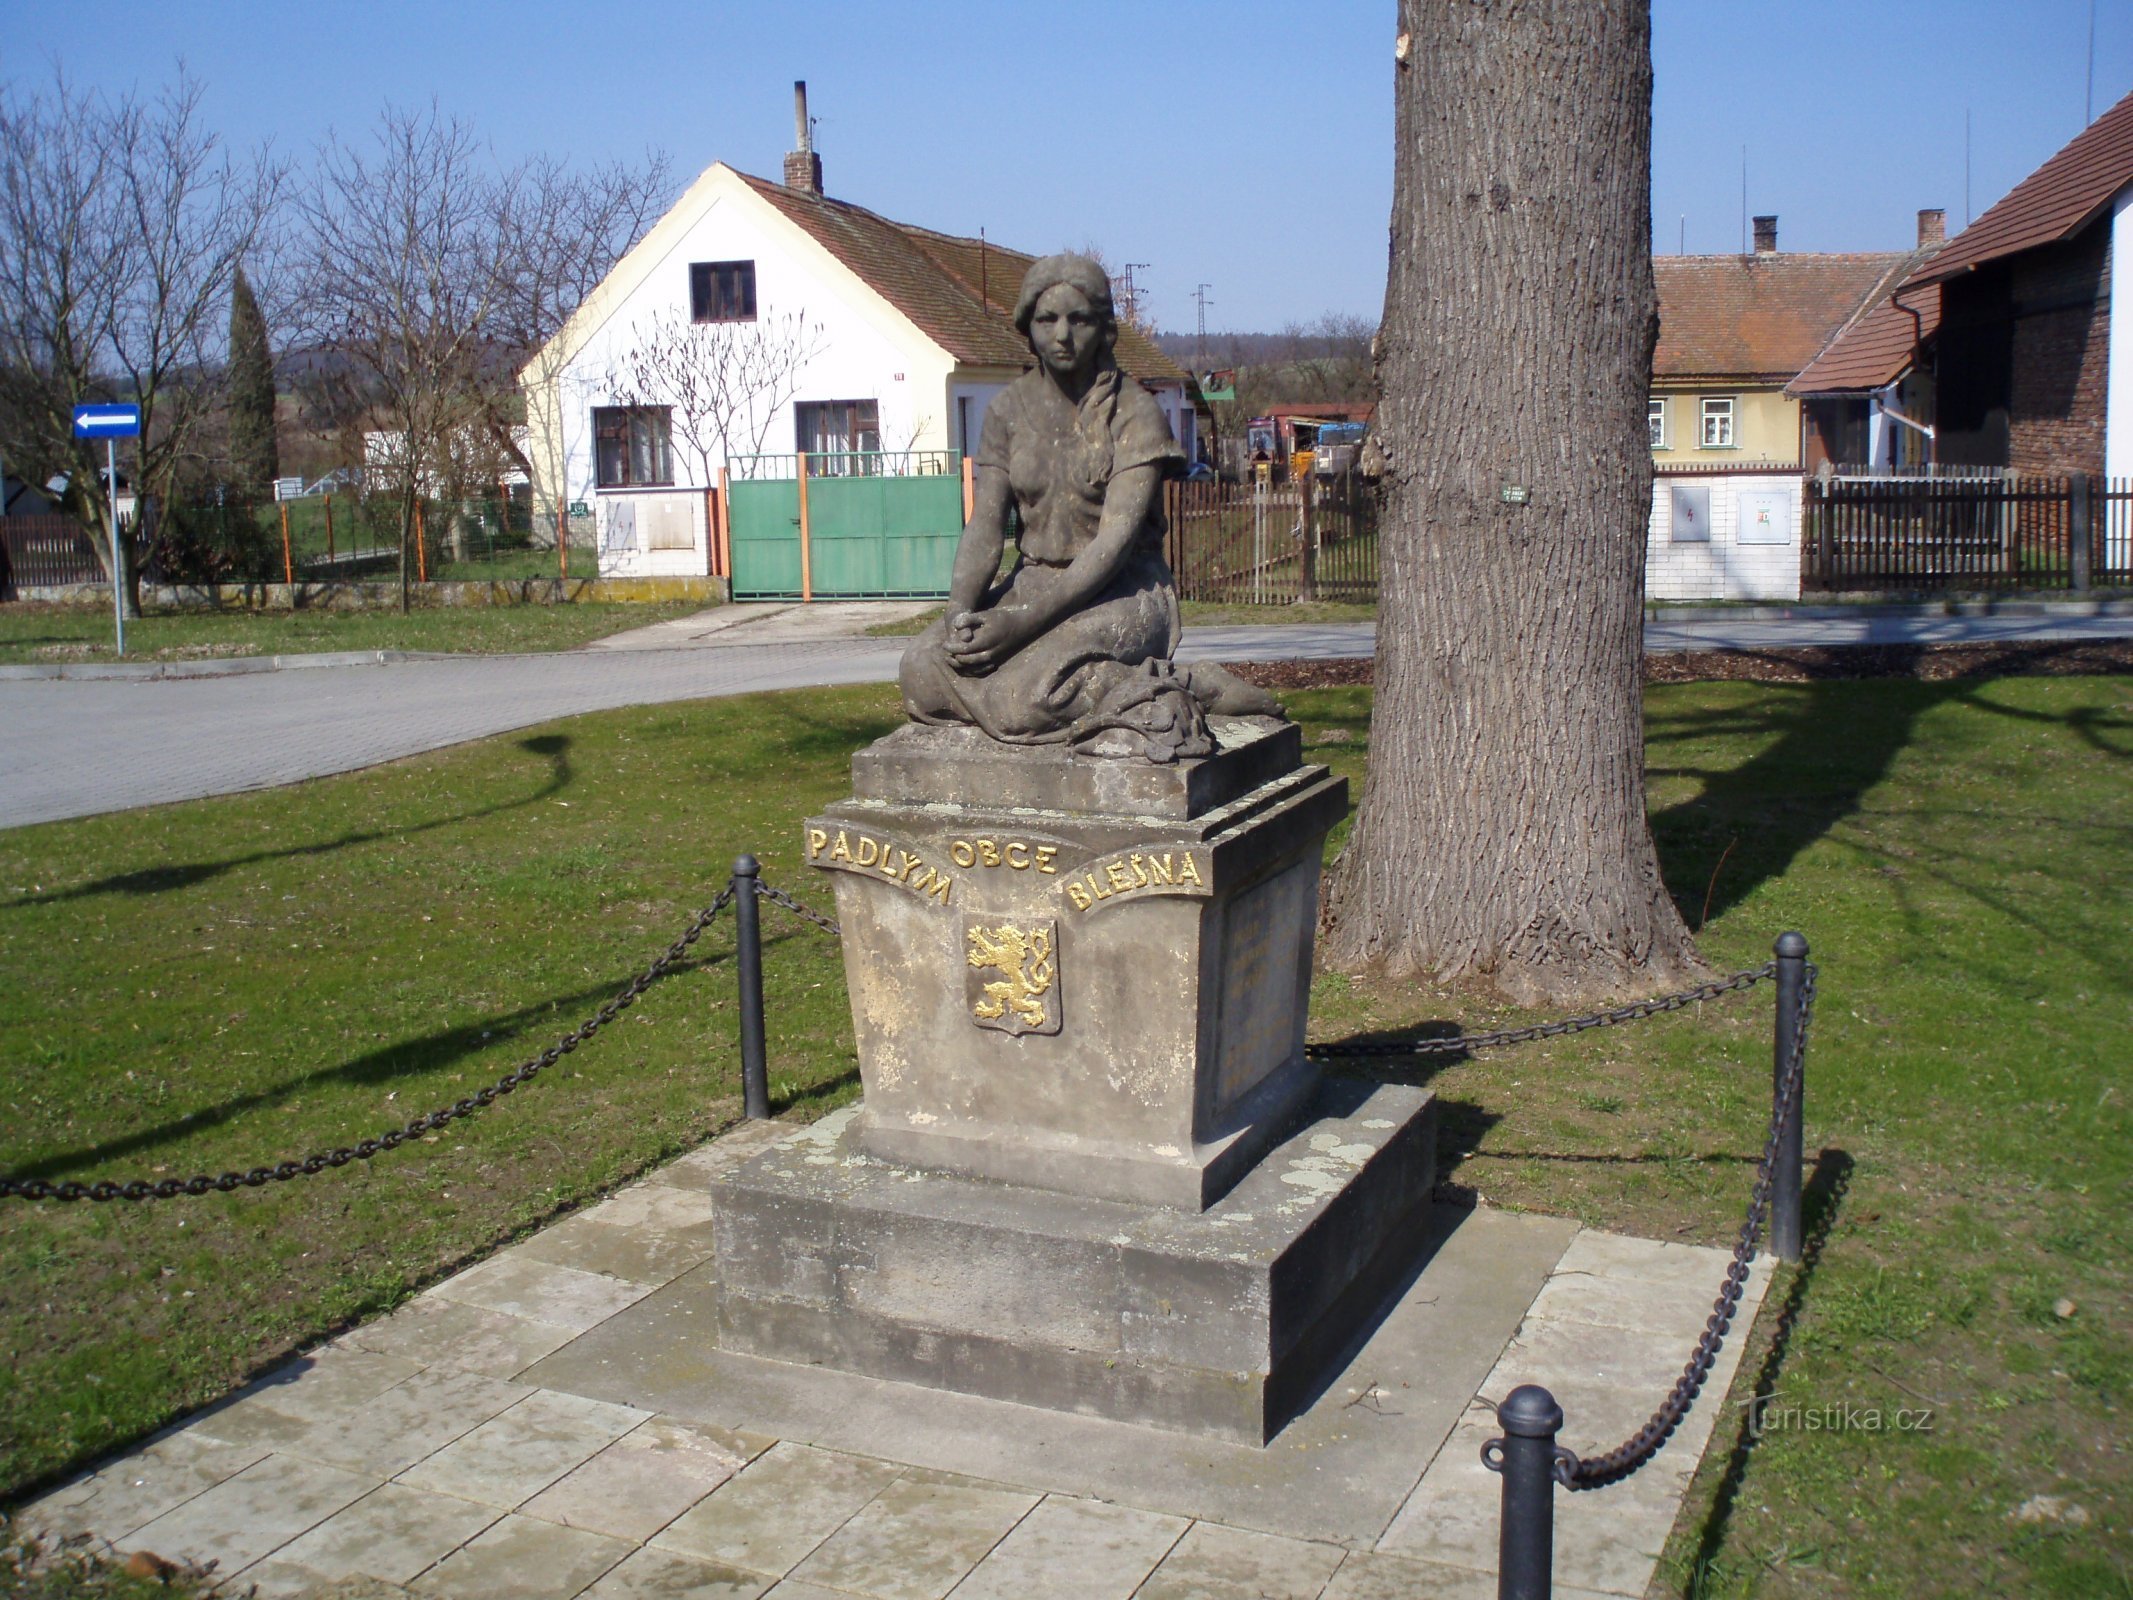 Đài tưởng niệm những người đã chết trong Chiến tranh thế giới thứ nhất (Blešno)